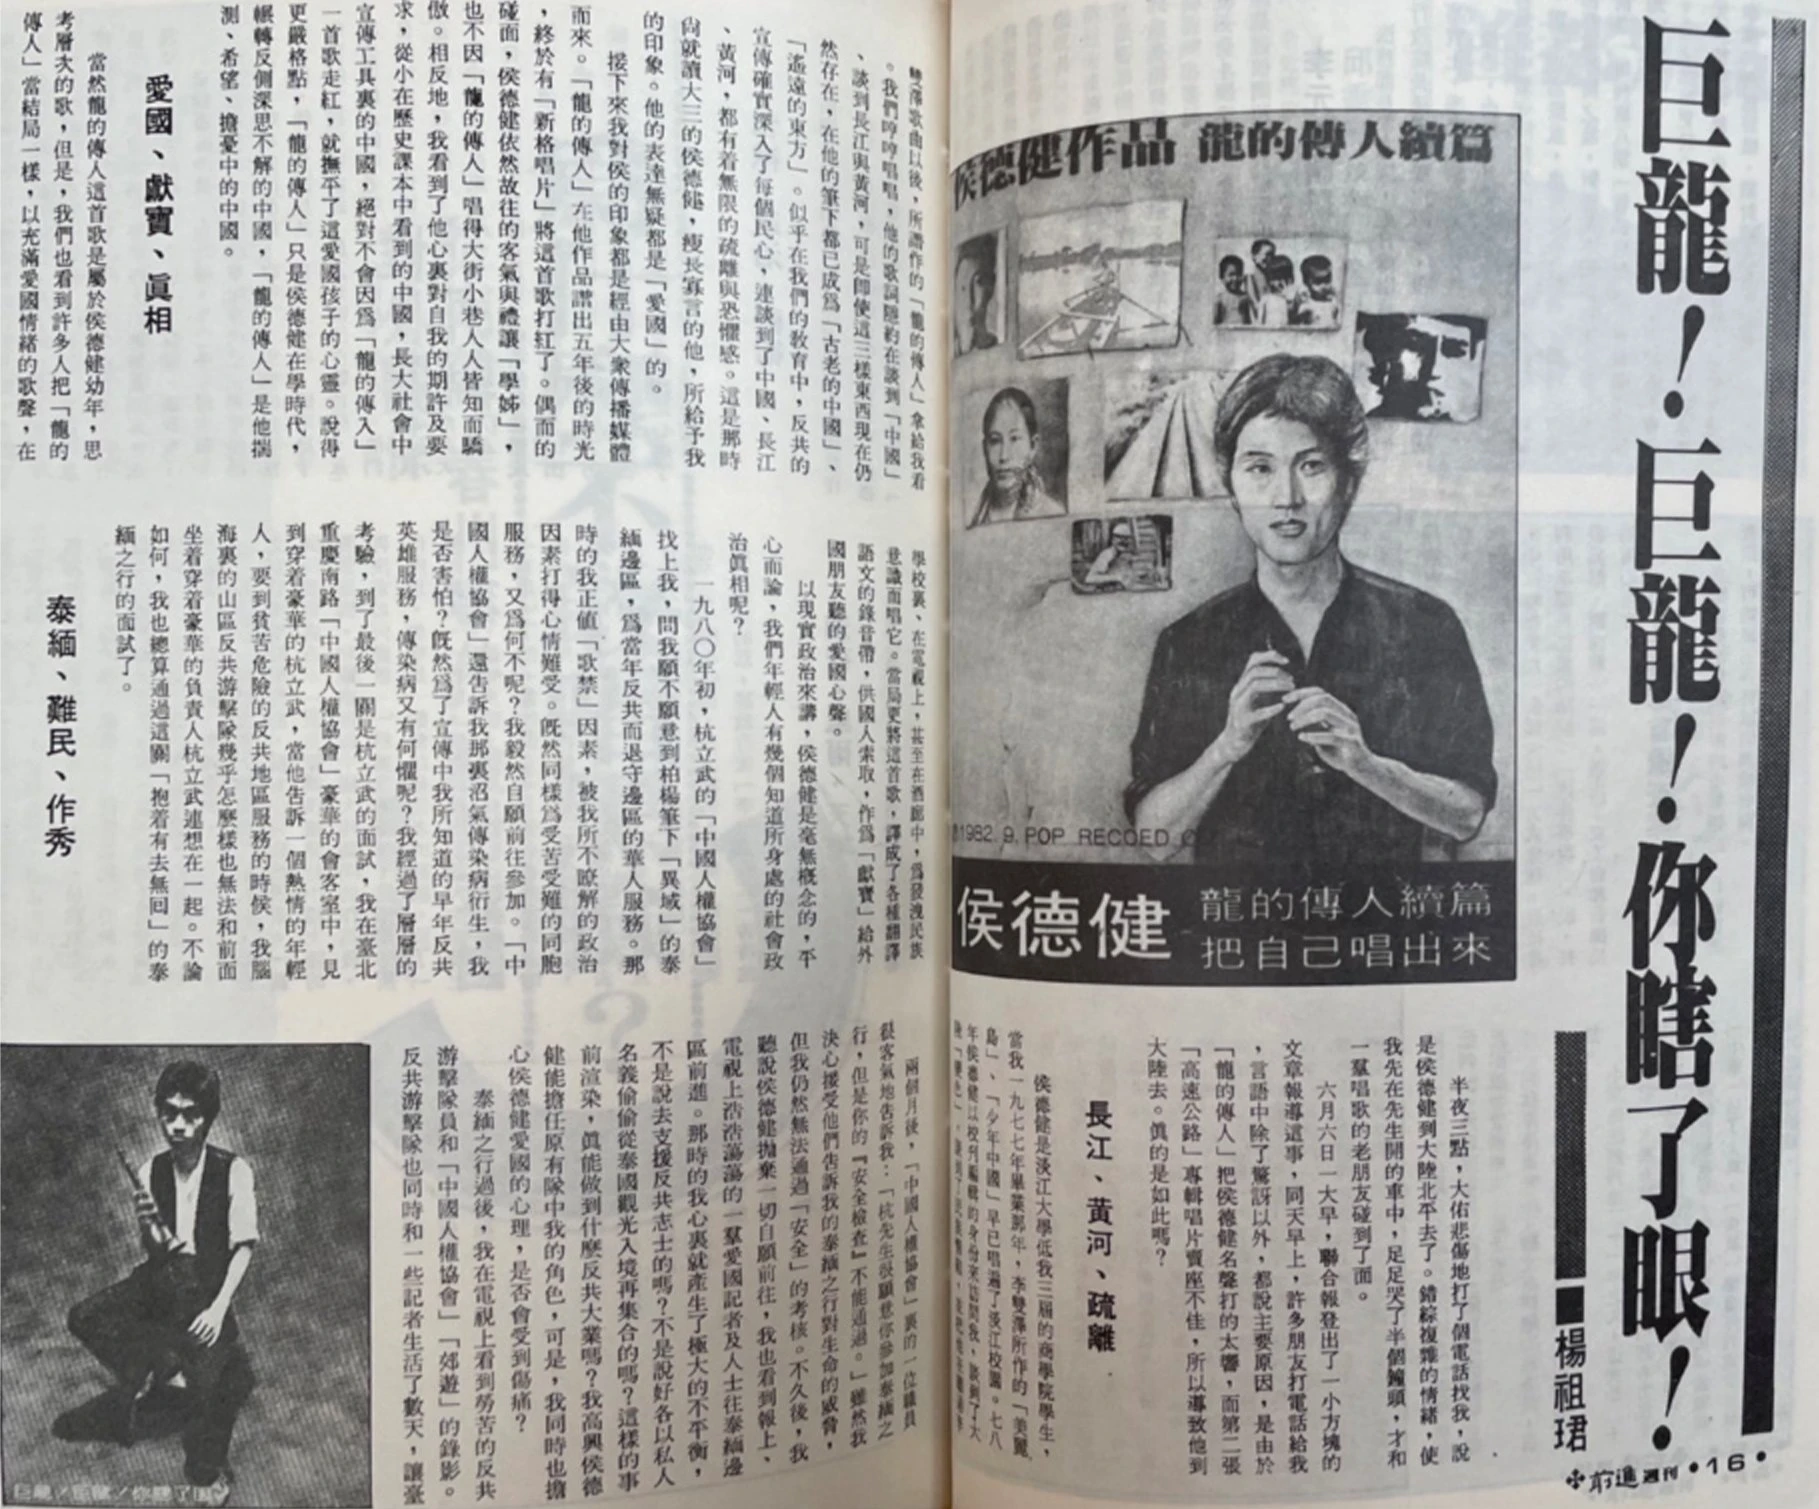 楊祖珺，〈巨龍！ 巨龍！ 你瞎了眼！〉，《前進》週刊，1983.06.11-圖片